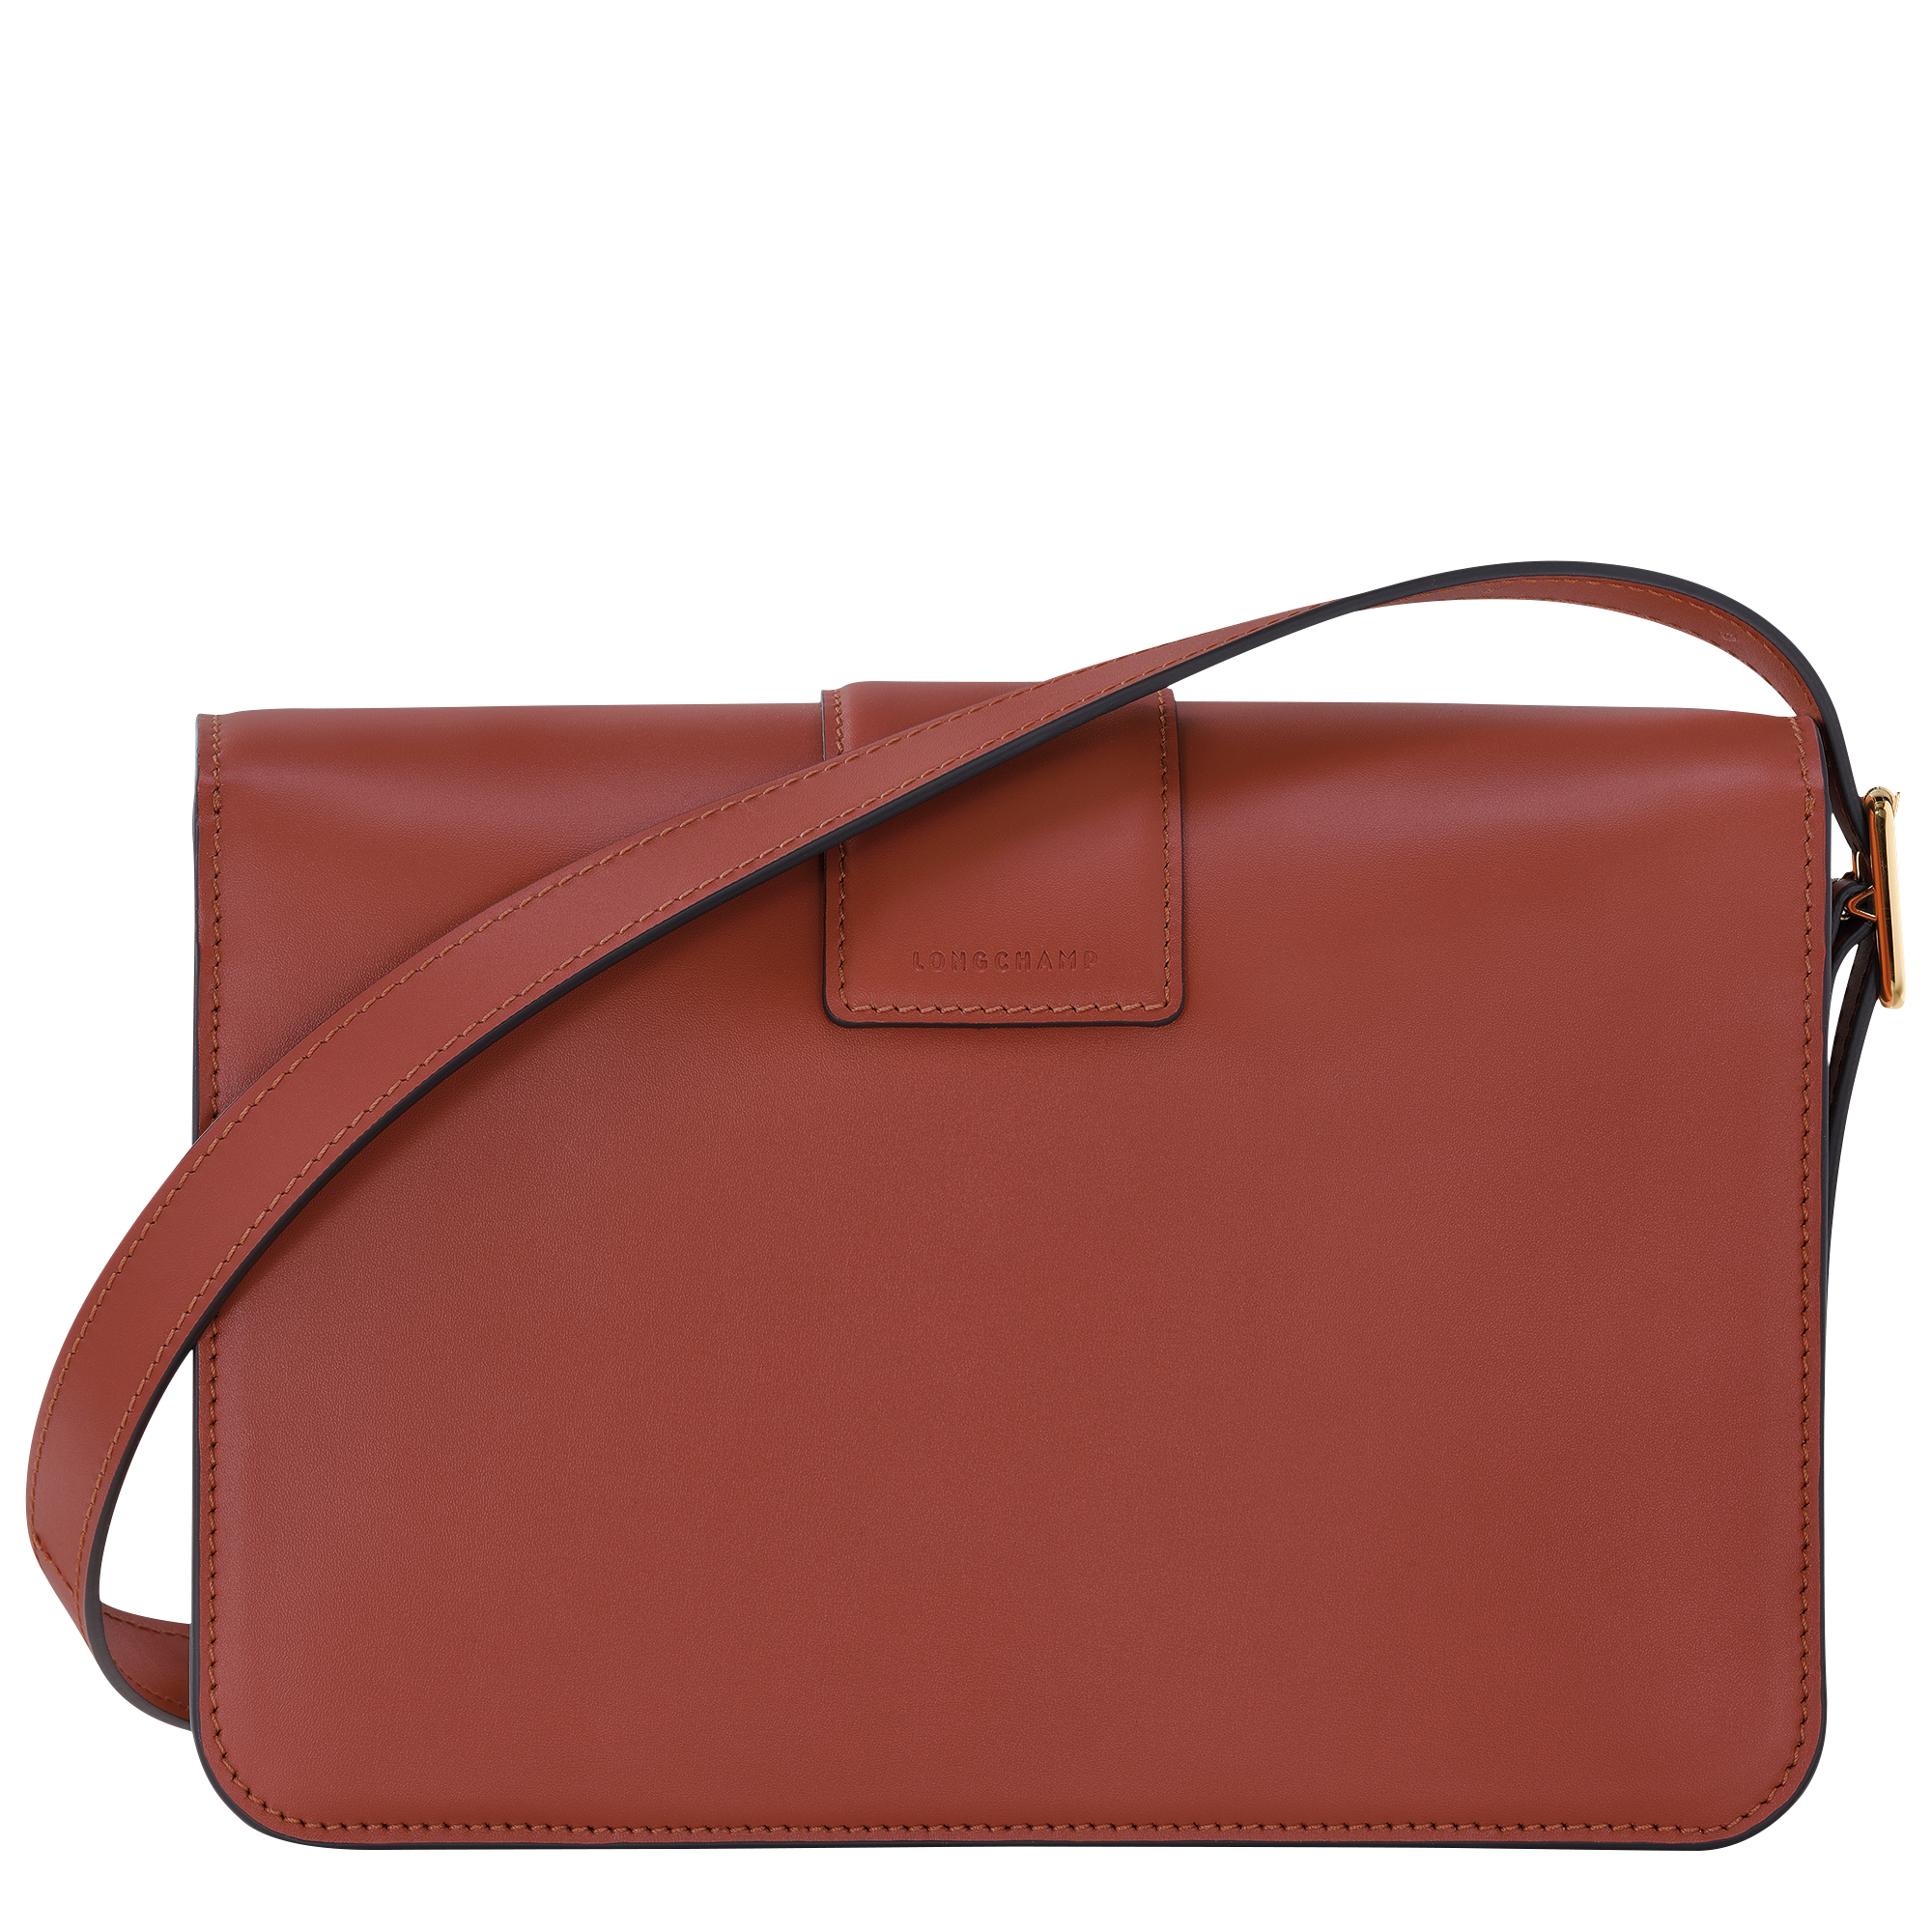 Longchamp Le Pliage Xtra S Handbag Mahogany - Leather